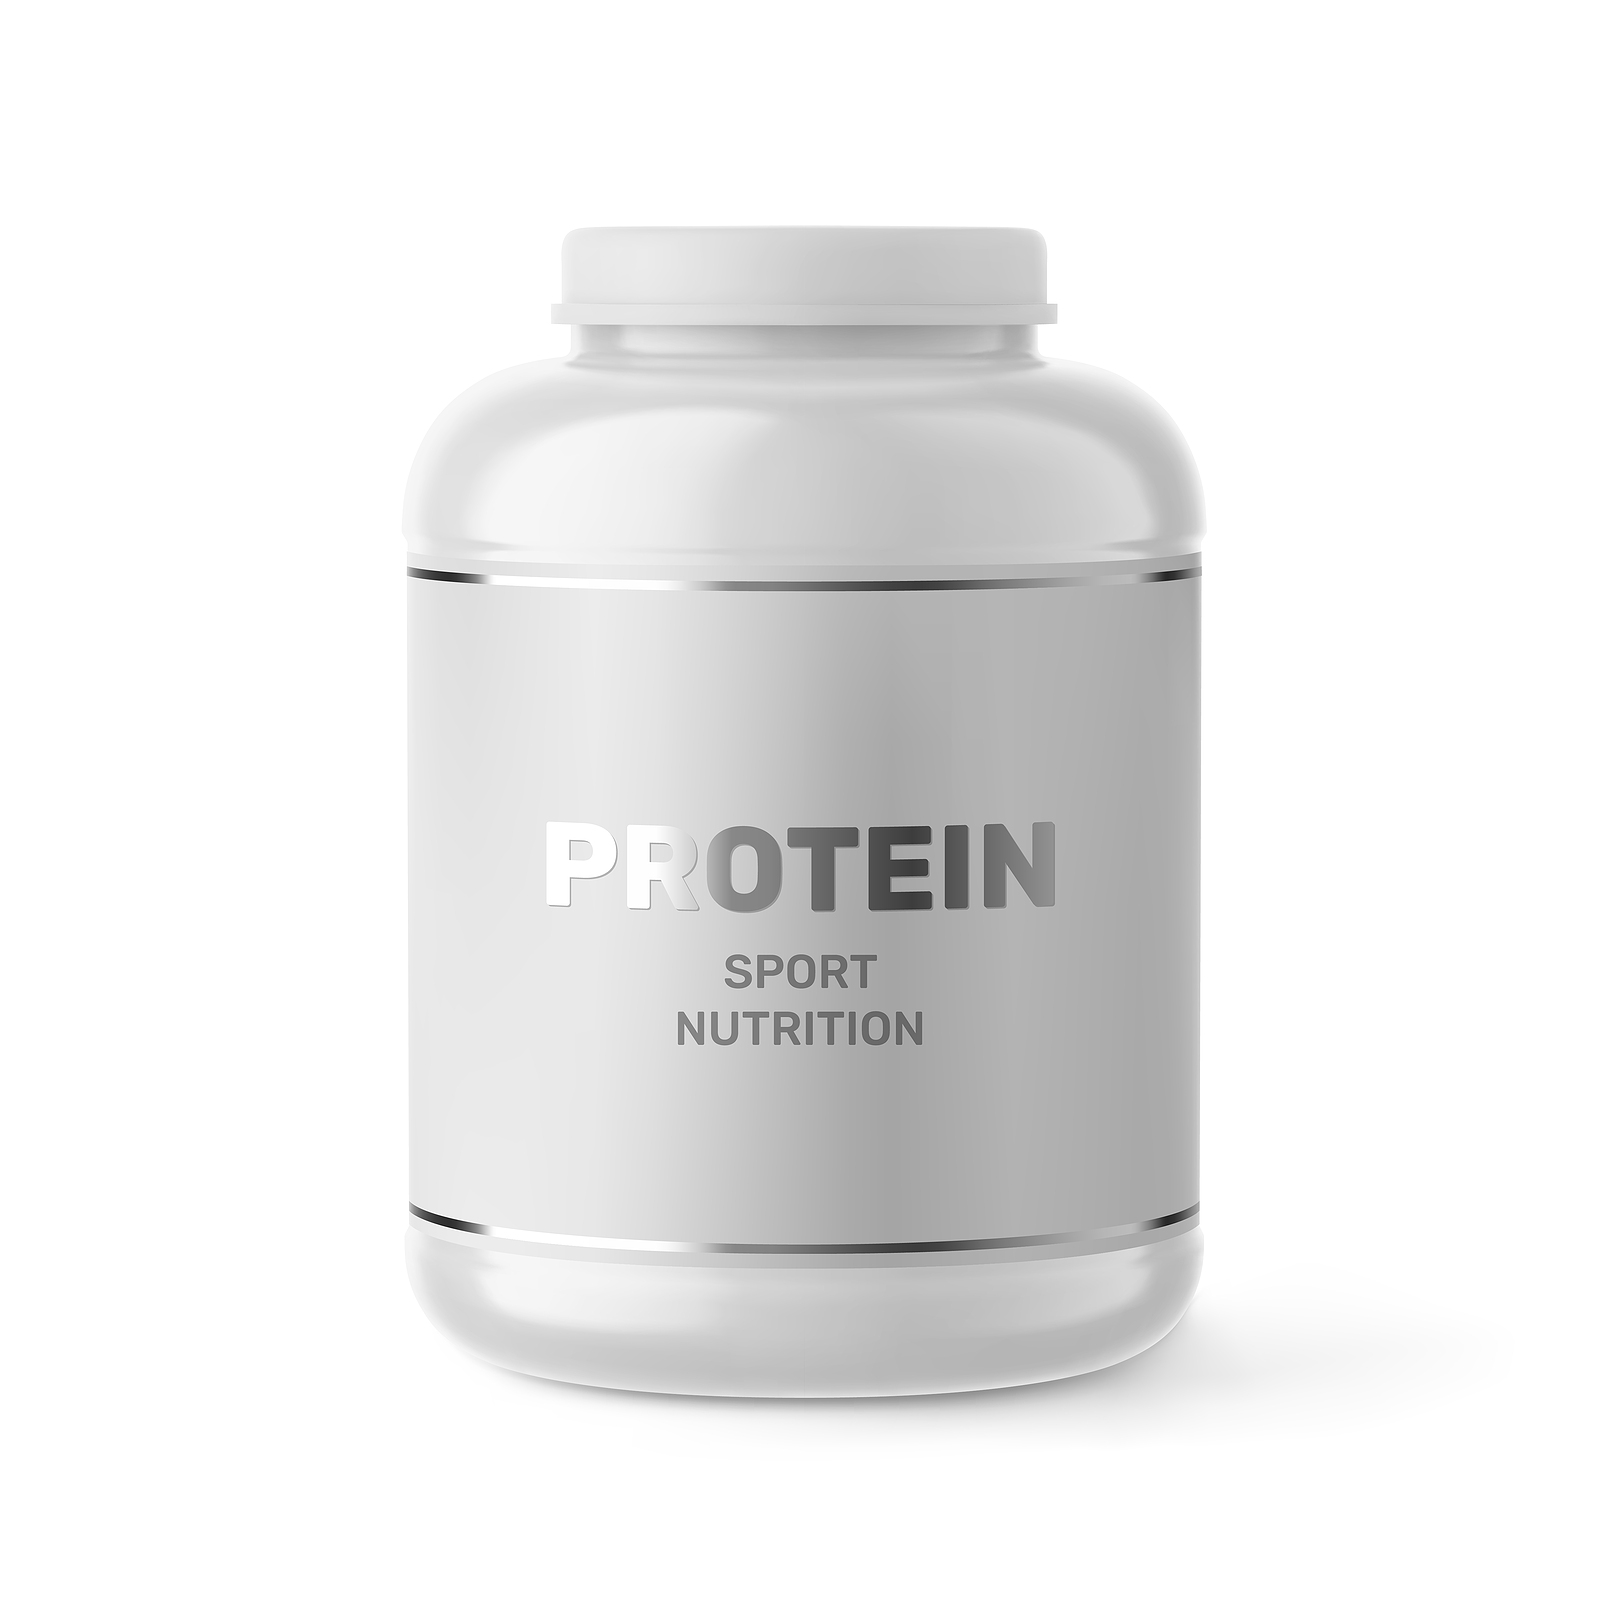 Protein Powder Label